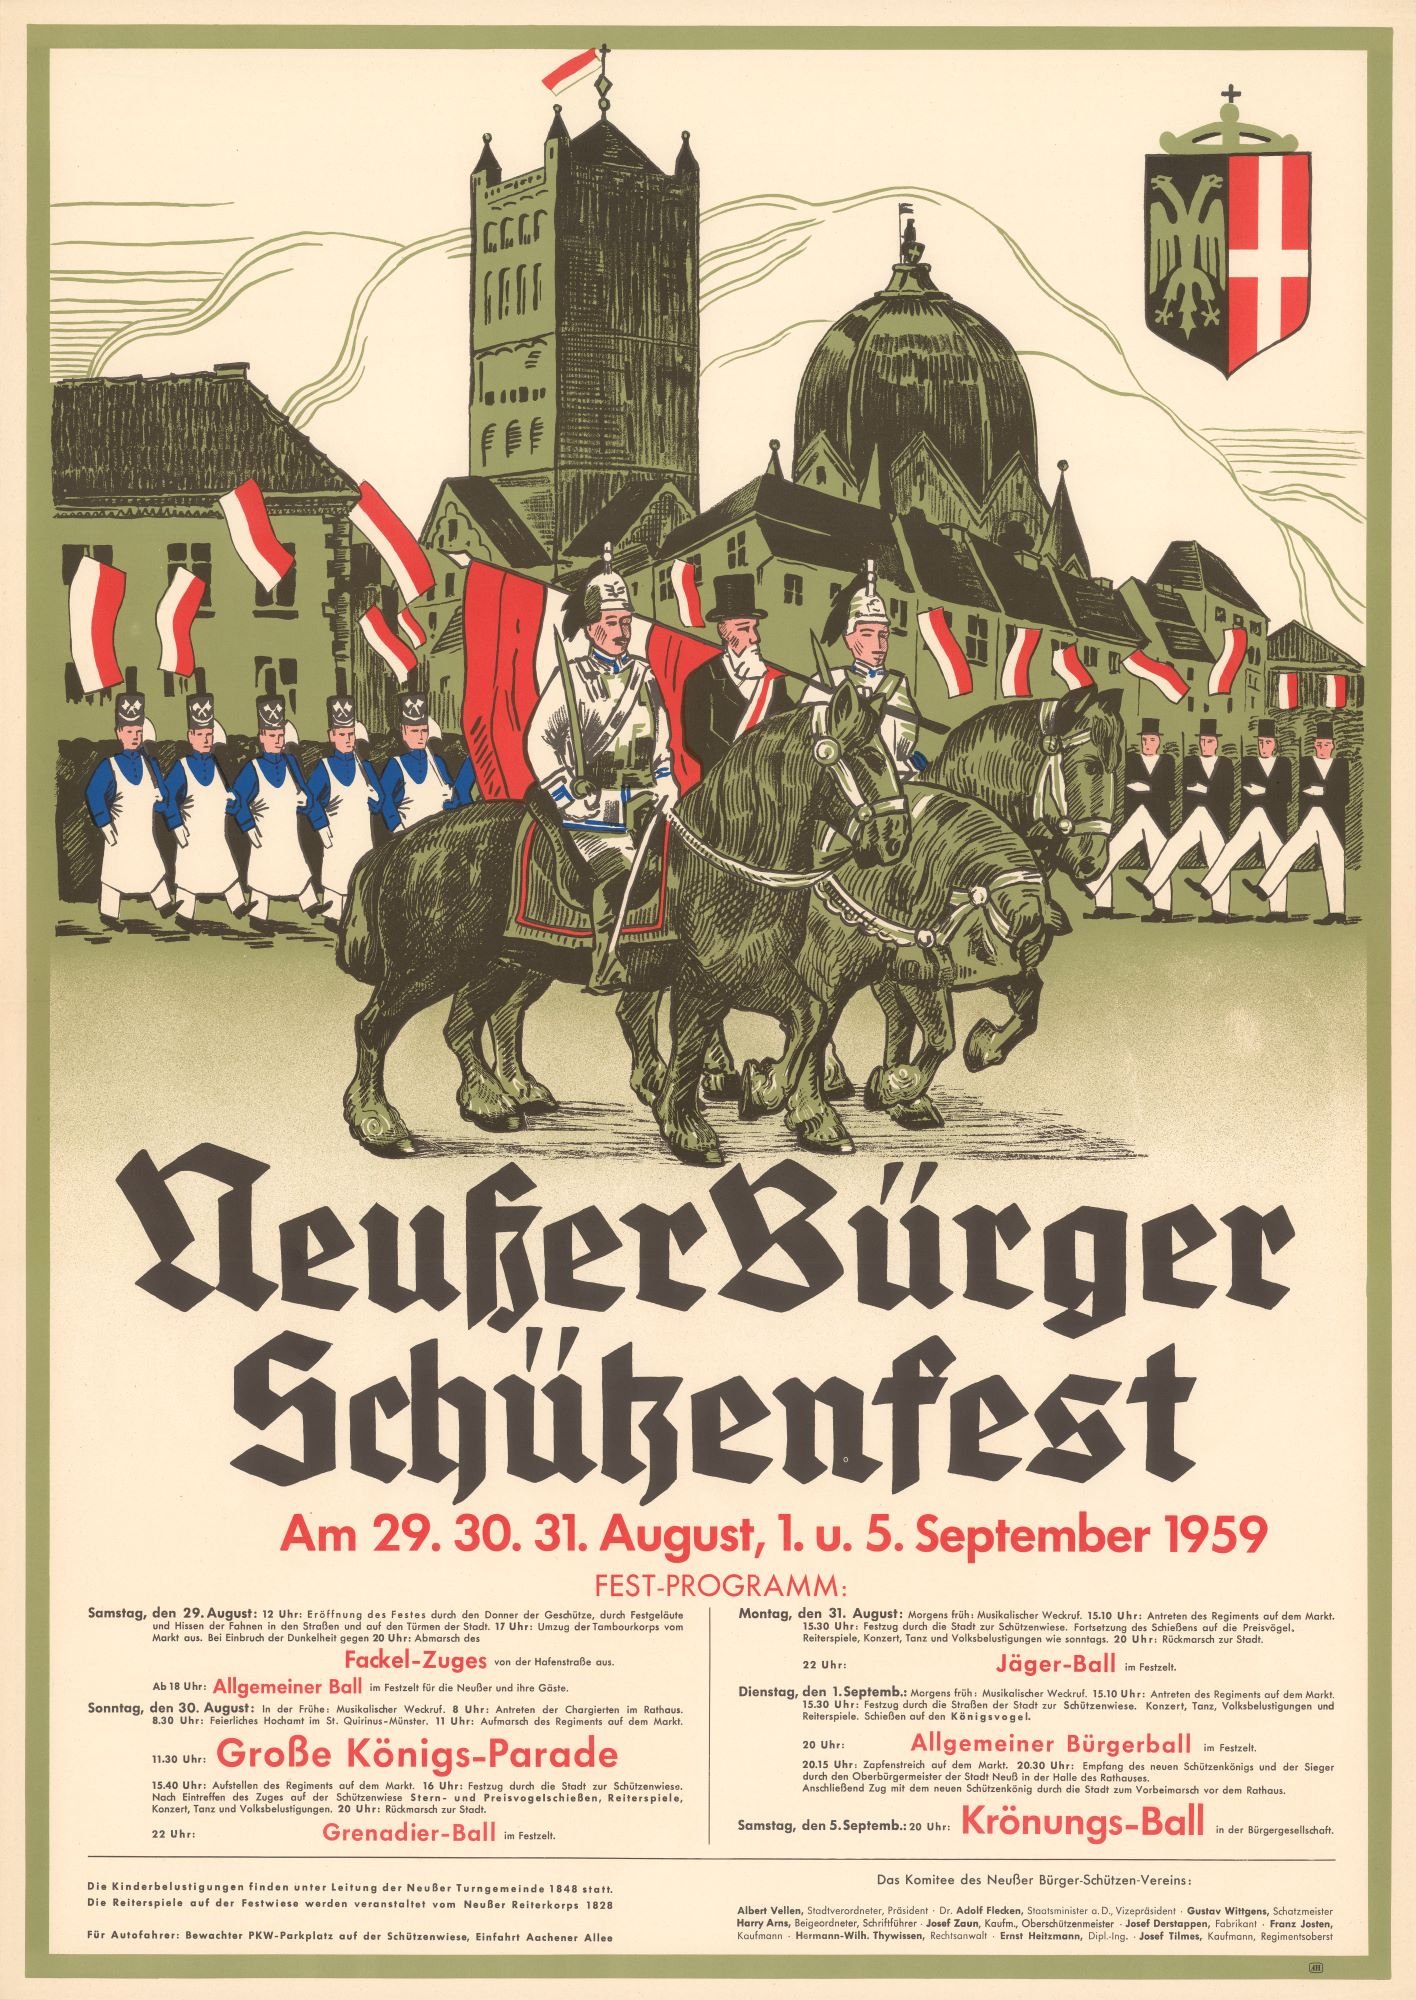 Festplakat Schützenfest Neuss 1959 (Rheinisches Schützenmuseum Neuss CC BY-NC-SA)